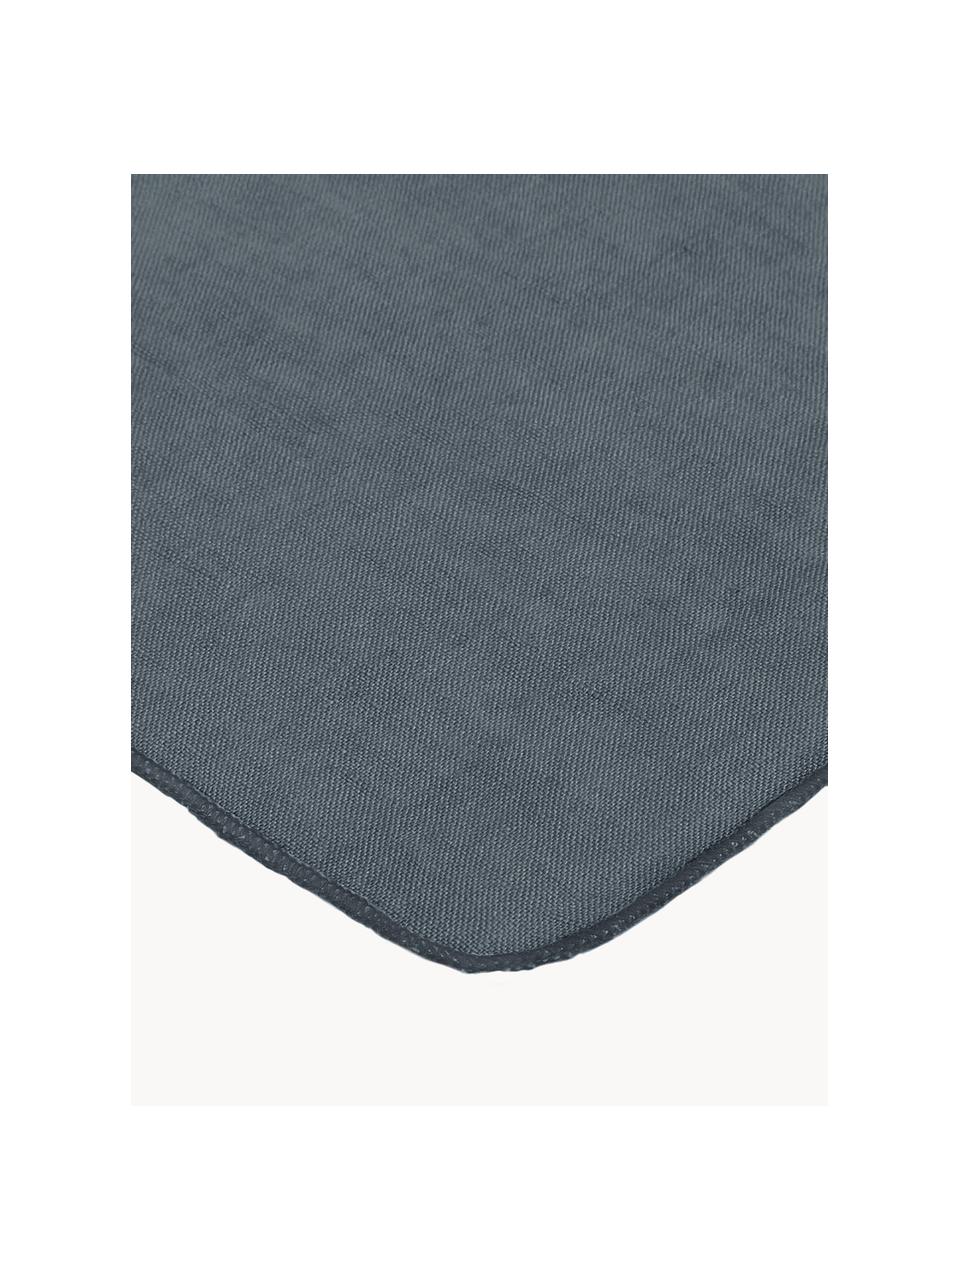 Serviettes de table en lin Gracie, 2 pièces, 100 % lin, Bleu foncé, larg. 45 x long. 45 cm